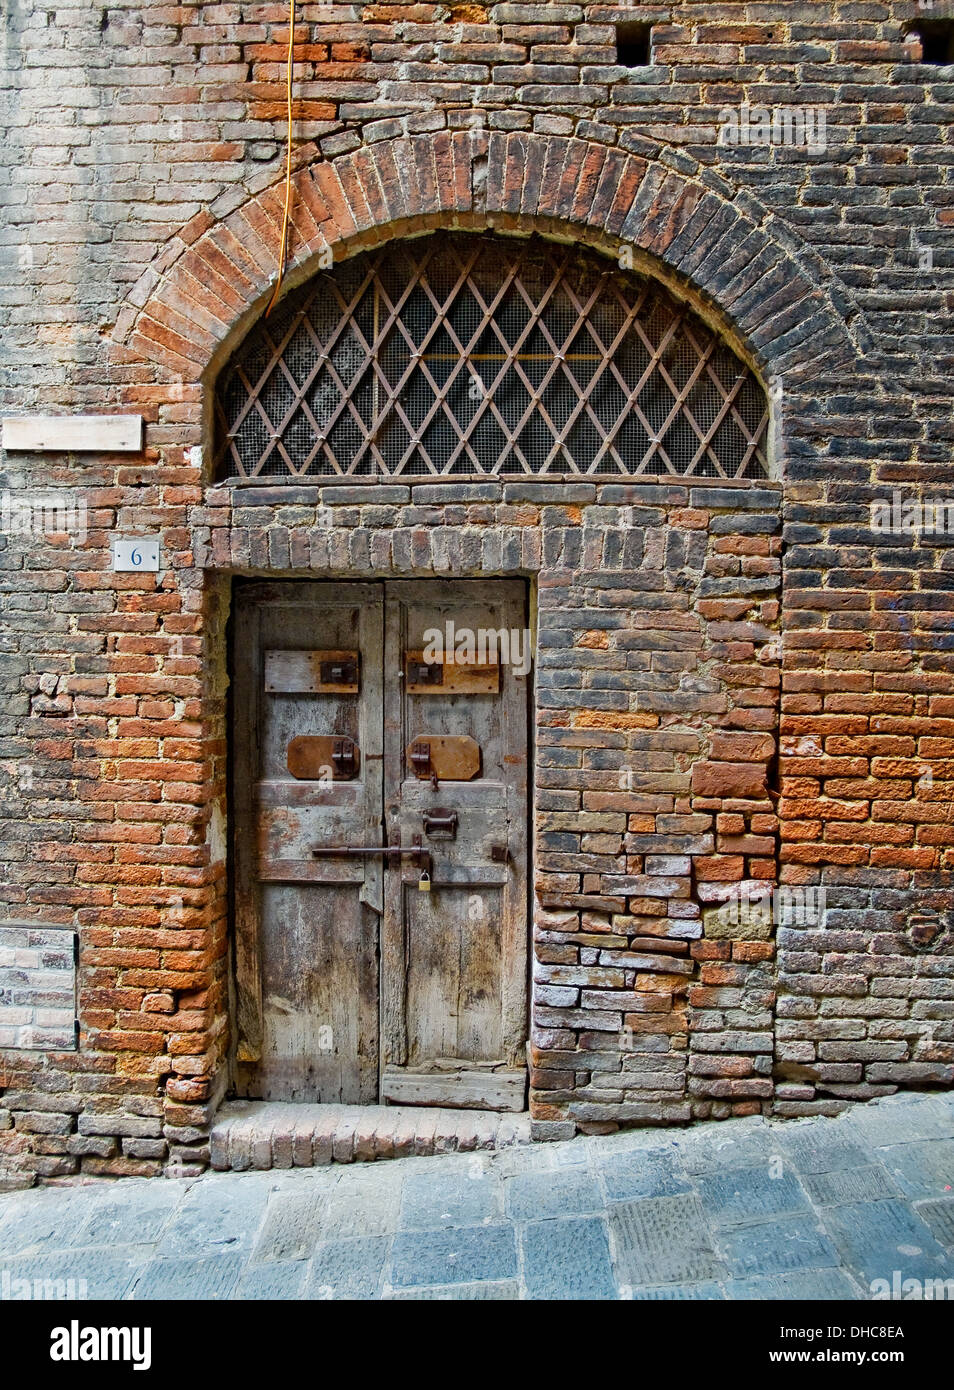 Antique wooden door in Siena street. Siena, Italy Stock Photo